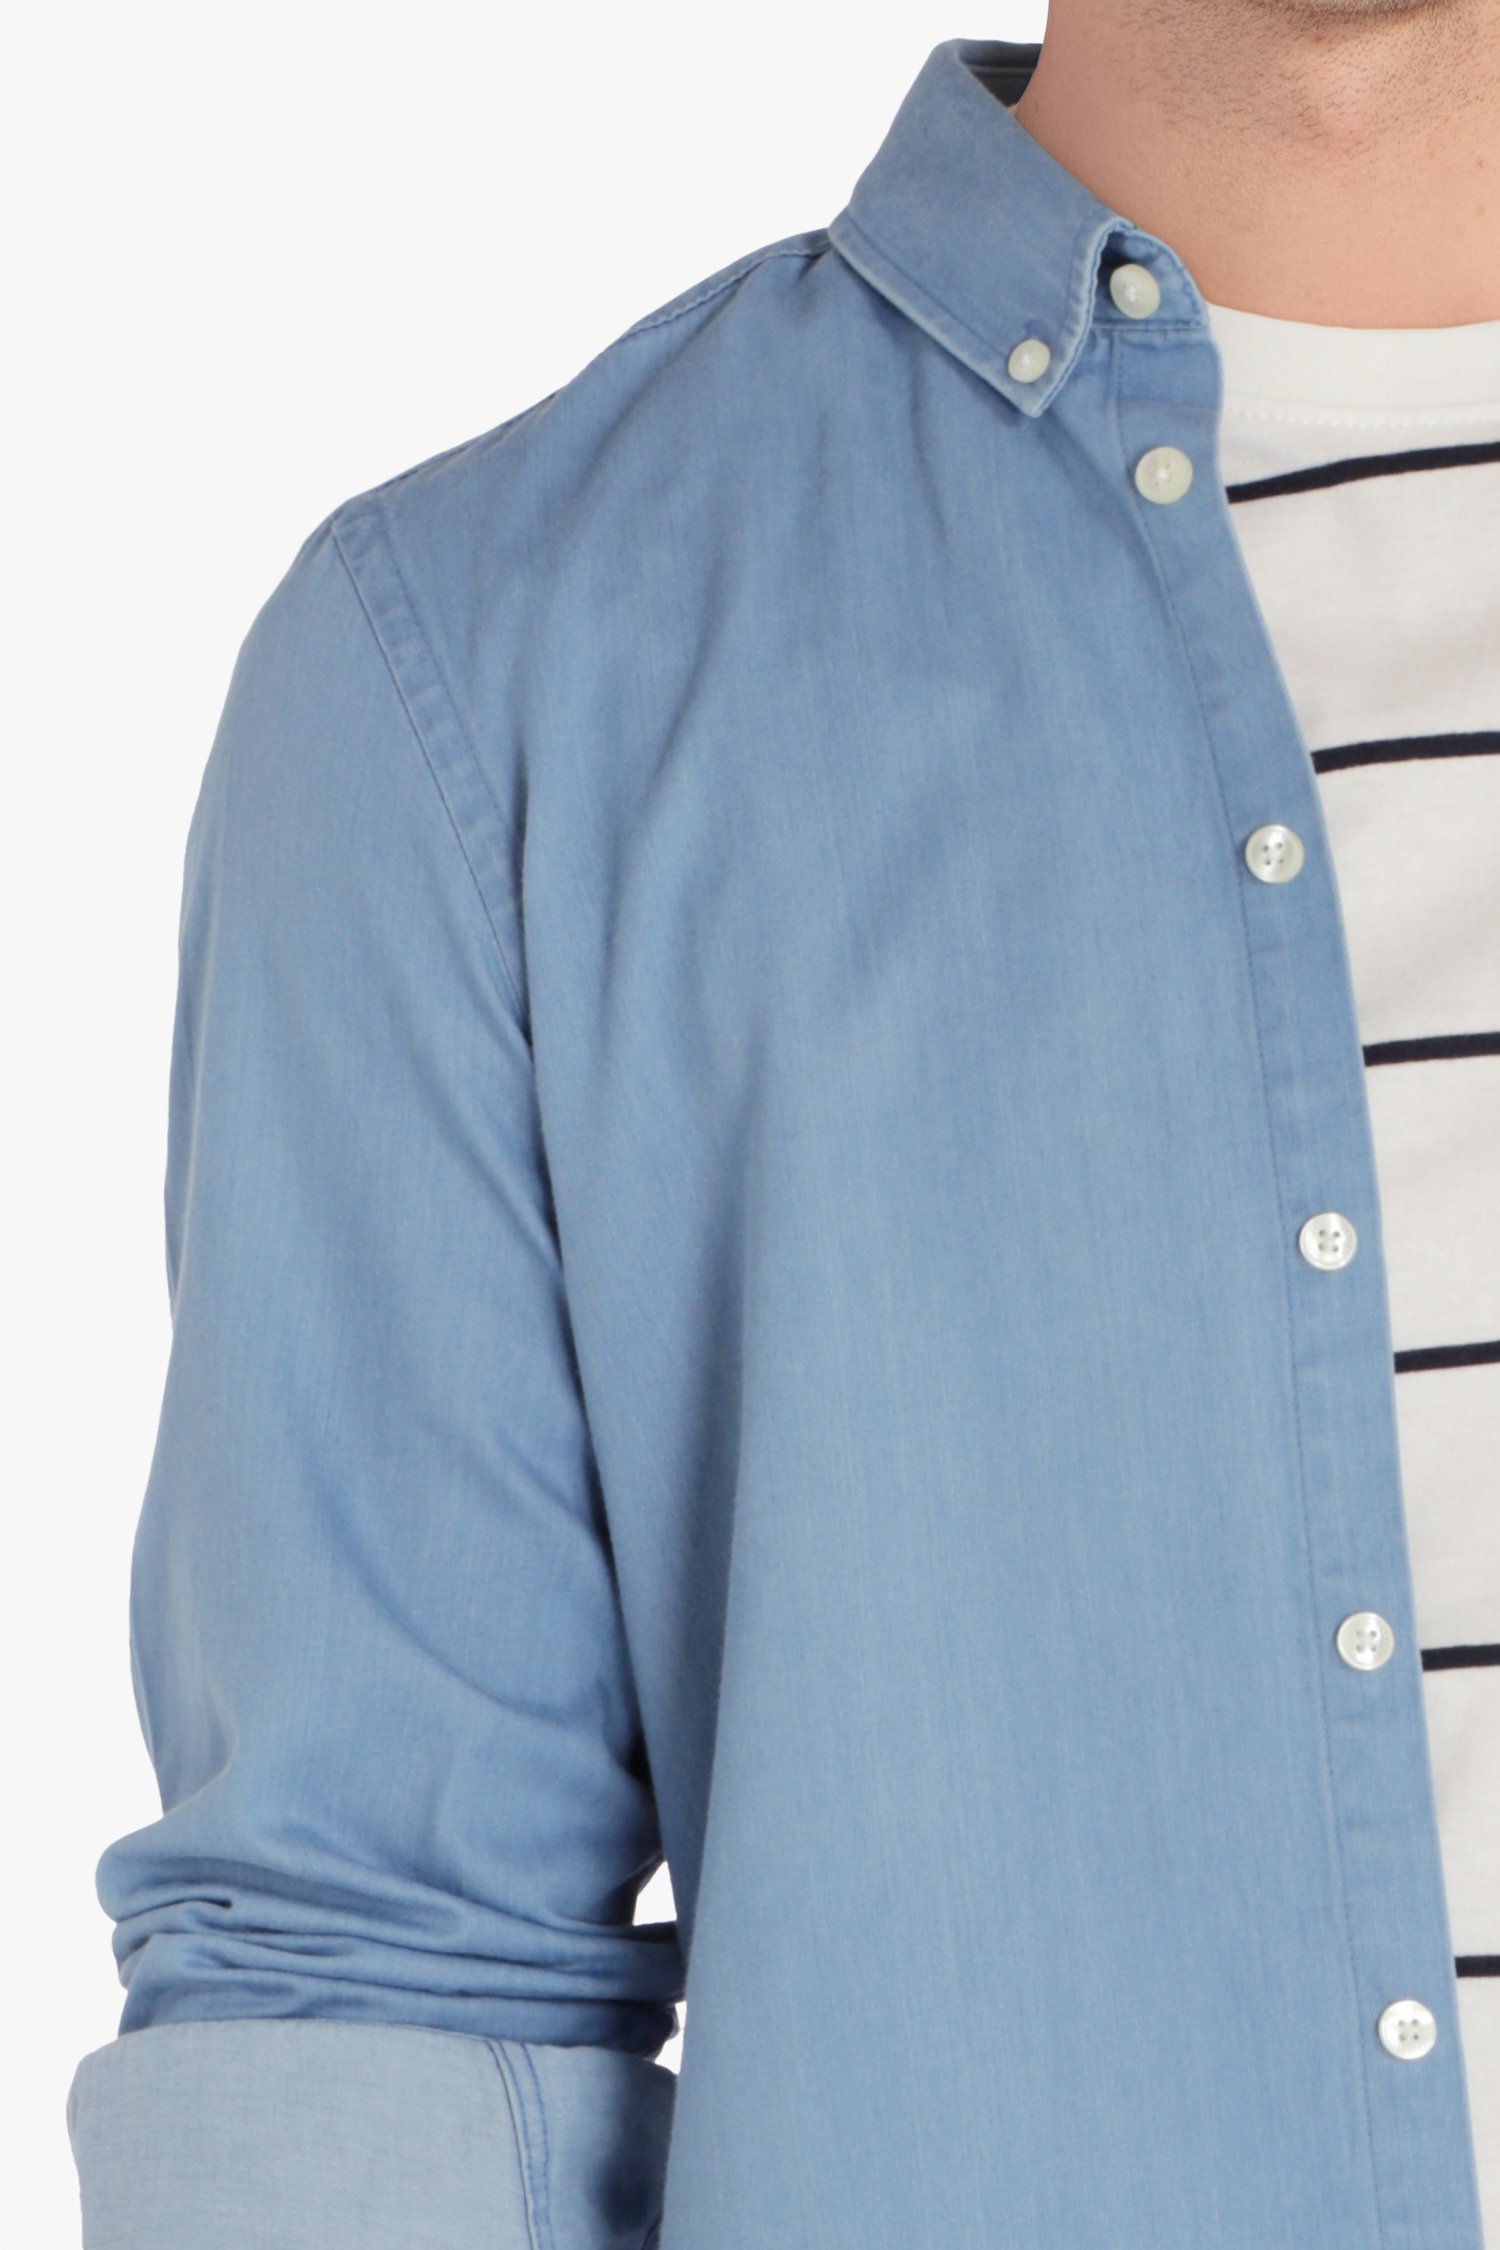 Lichtblauw hemd met ecru knopen van Casual Friday voor Heren